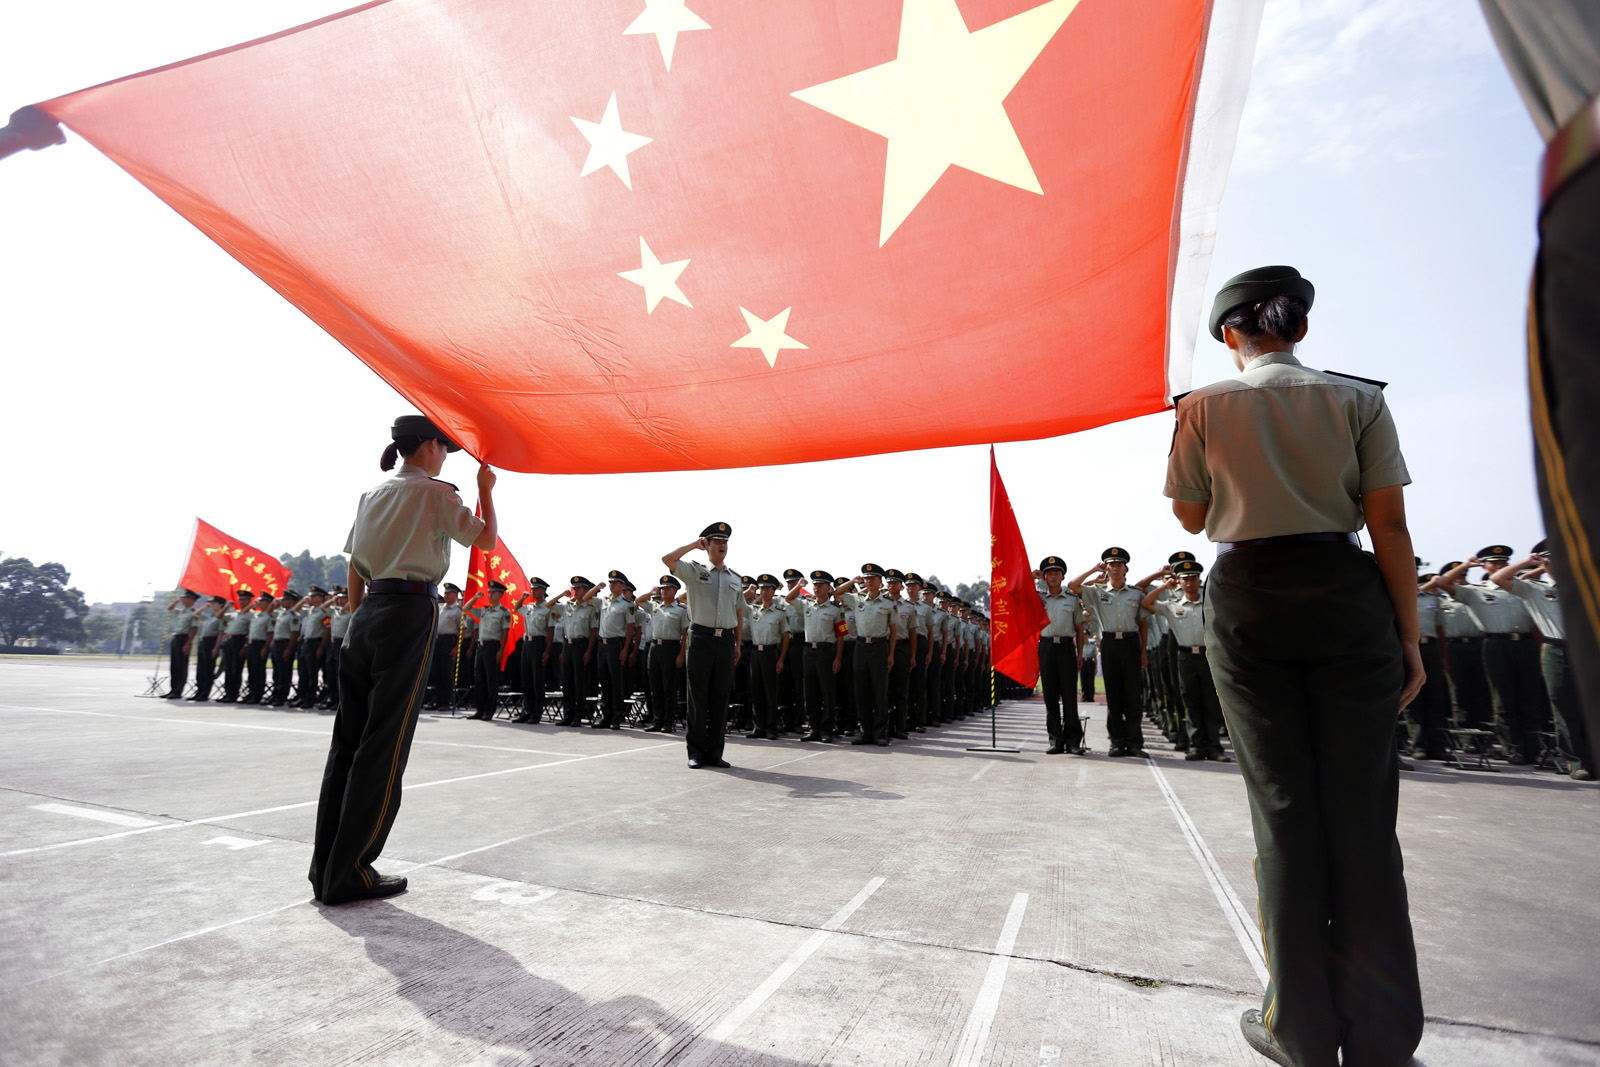 中国,9岁国旗宝贝,天天举行正式升旗仪式,令无数人倾倒